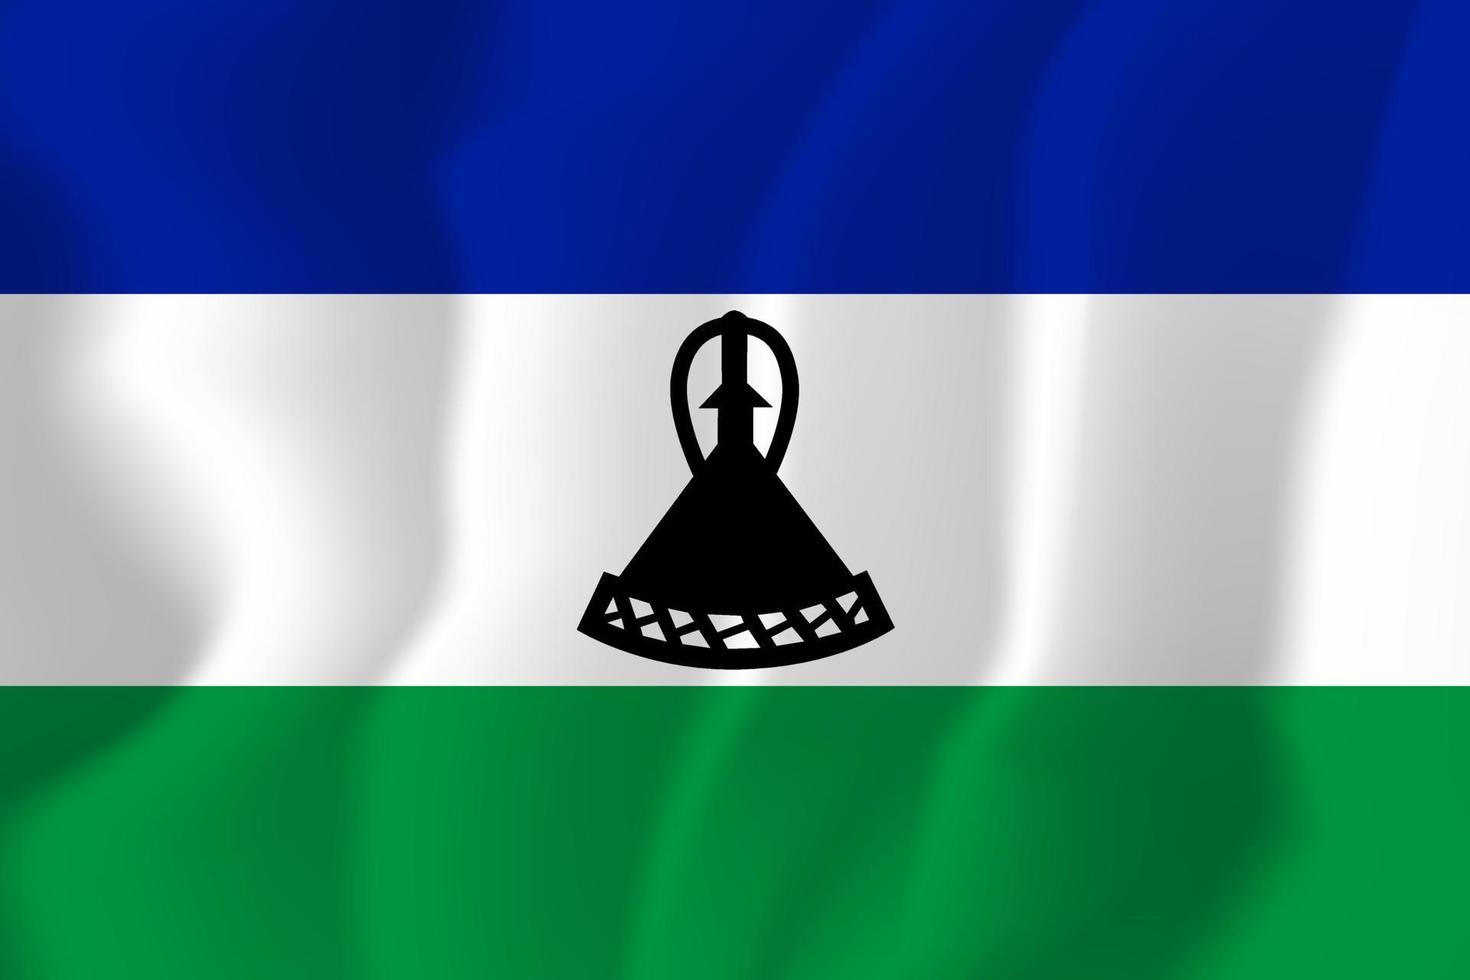 Lesotho National Flag Waving Background Illustration vector